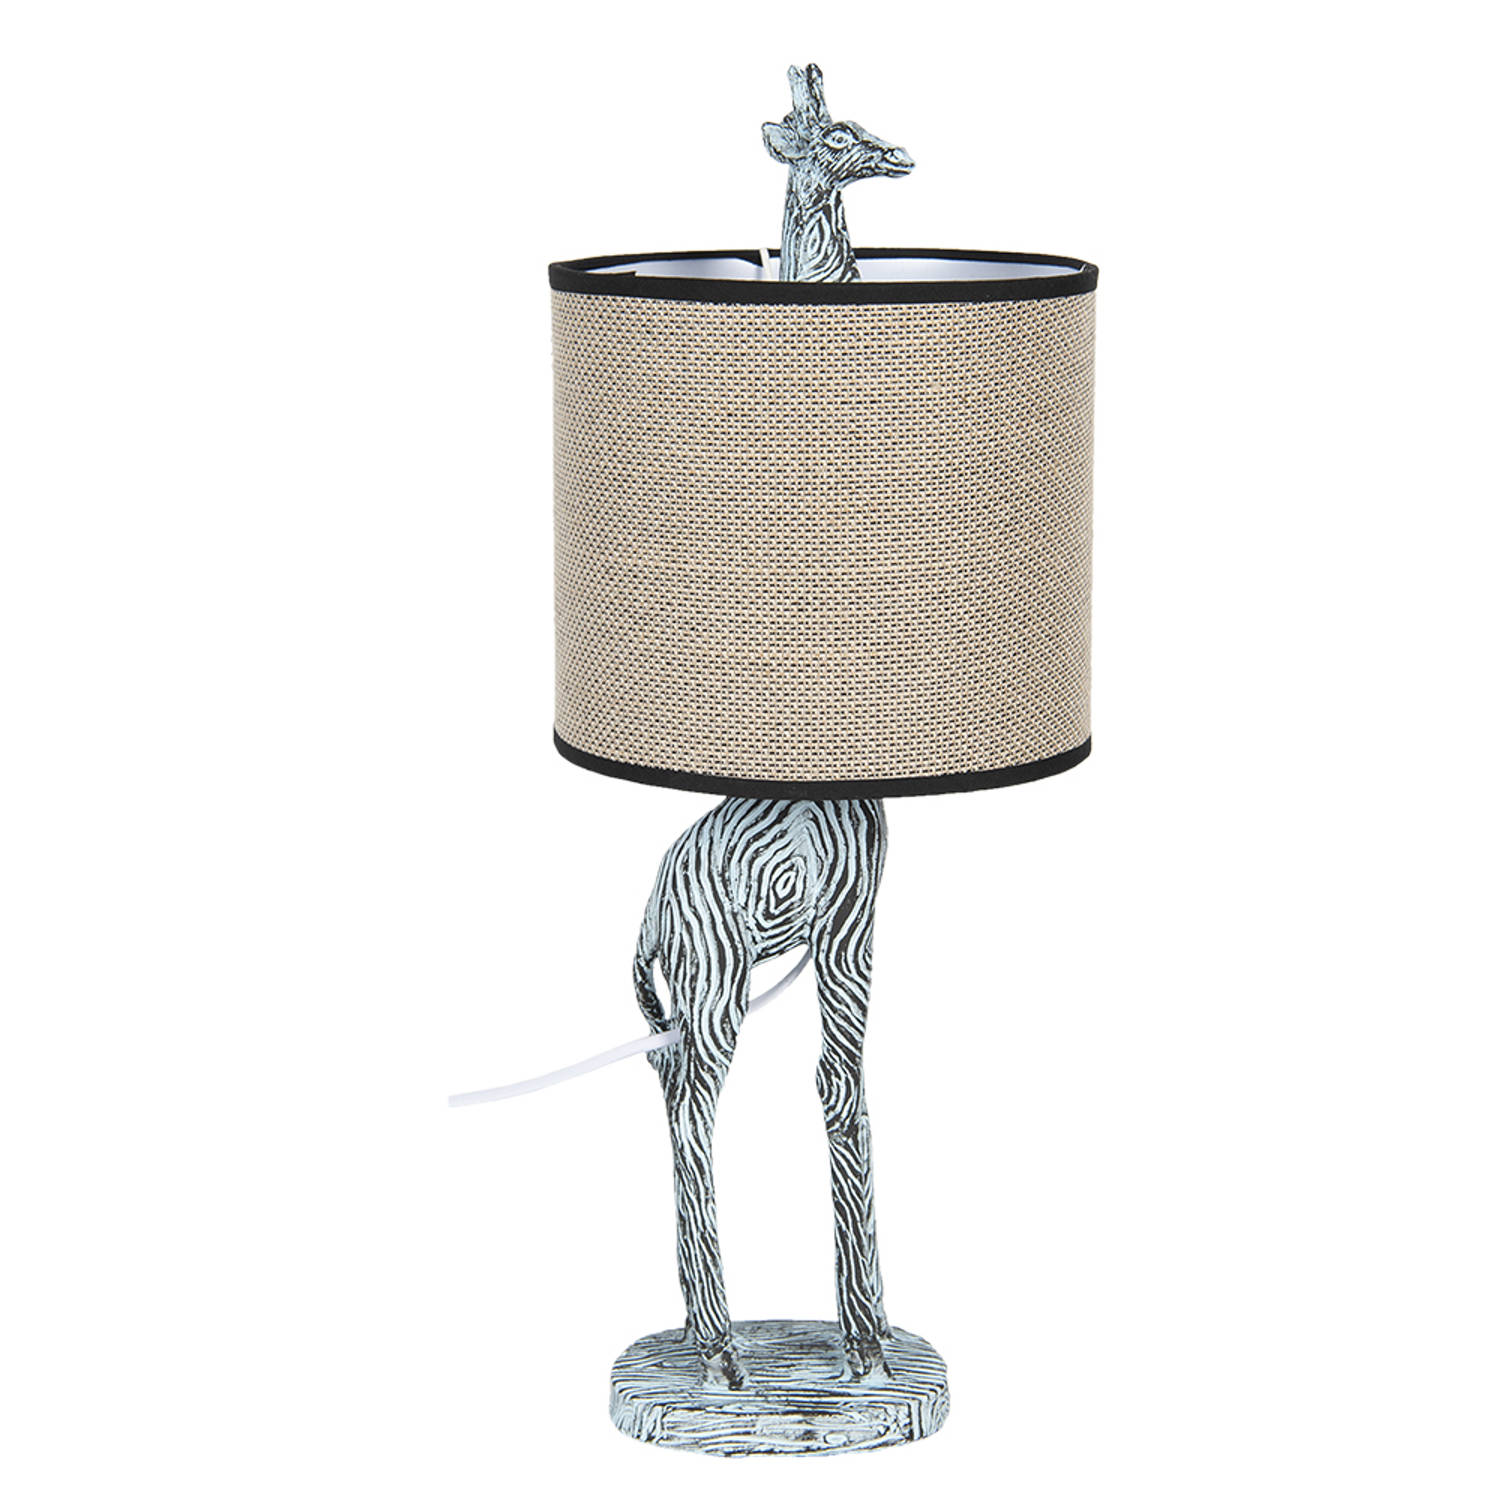 HAES DECO - Tafellamp - City Jungle - Giraf in de Lamp, formaat Ø 20x52 cm - Grijs / Wit met Beige Lampenkap - Bureaulamp, Sfeerlamp